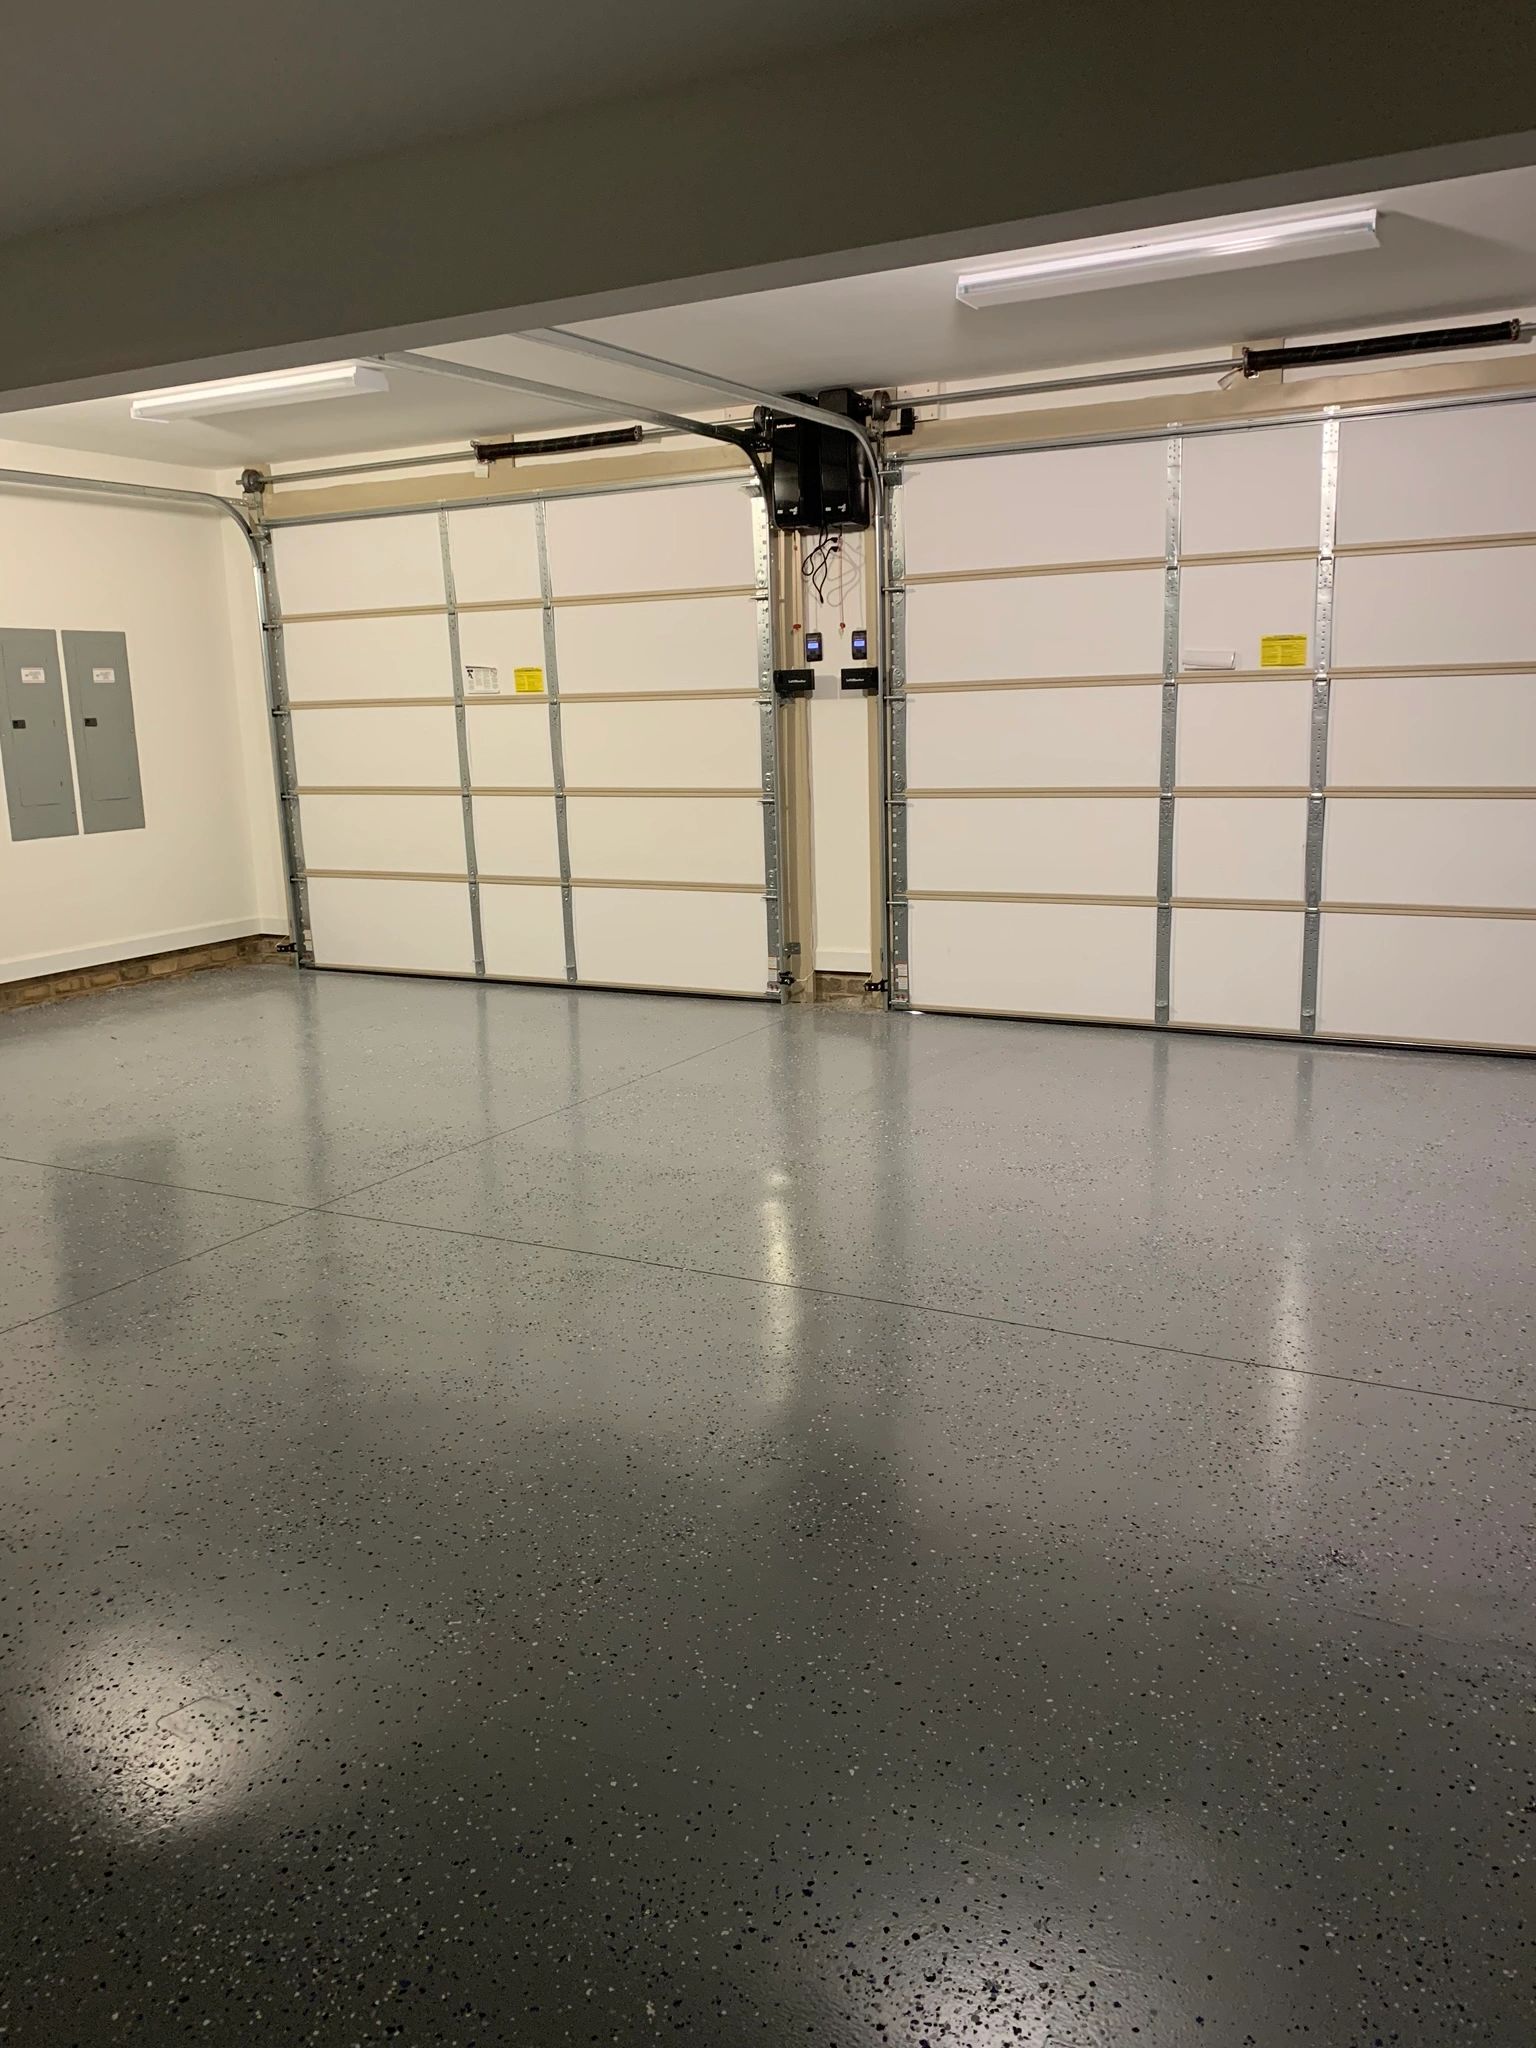 Double garage doors with epoxy floor.